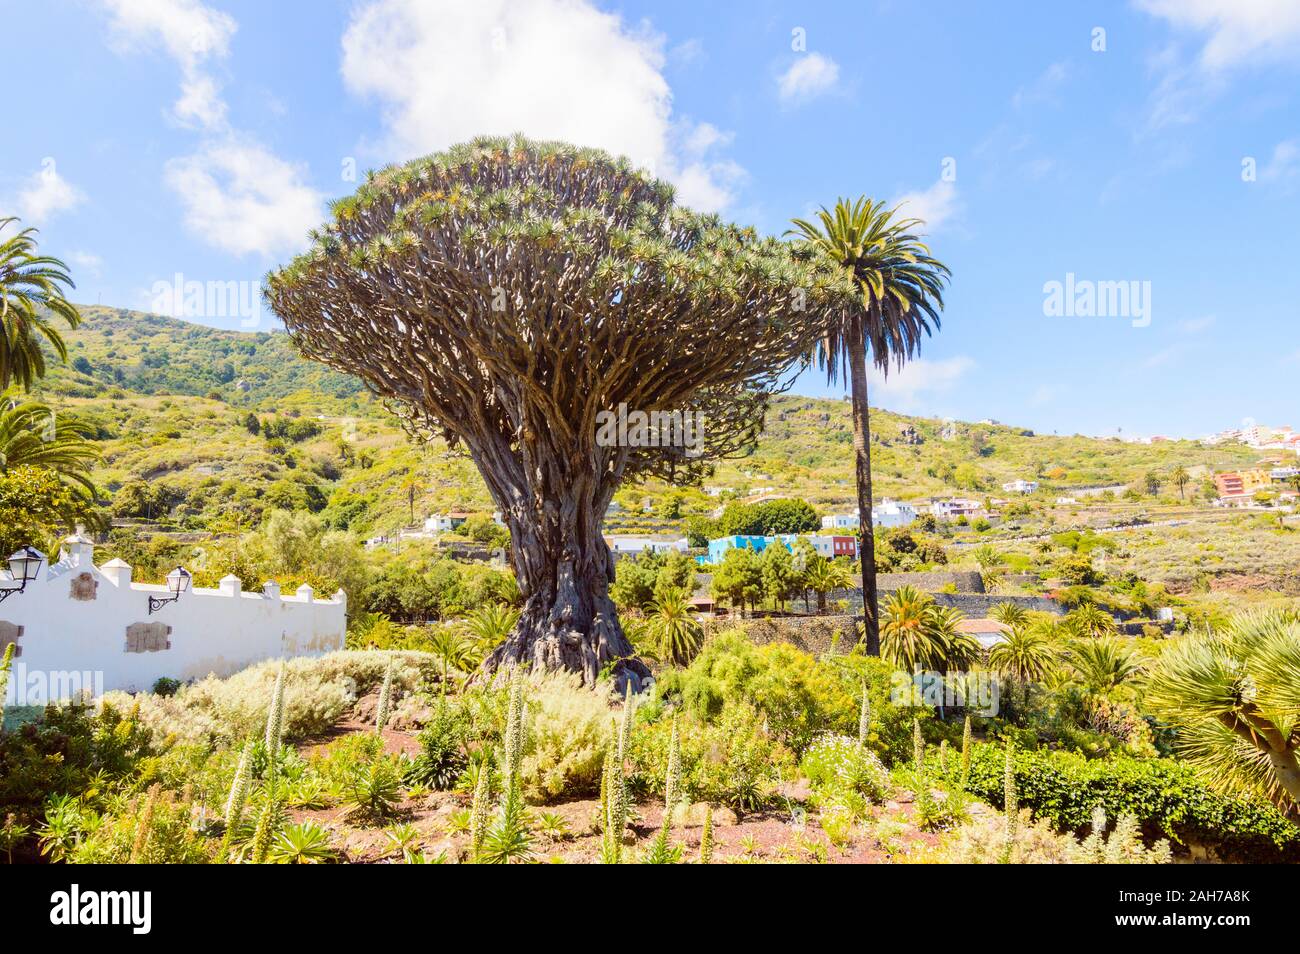 Millennial Drago Tree Next To A Palm Tree Symbol Of The Village Of Icod De Los Vinos. April 14, 2019. Icod De Los Vinos, Santa Cruz De Tenerife Spain Stock Photo